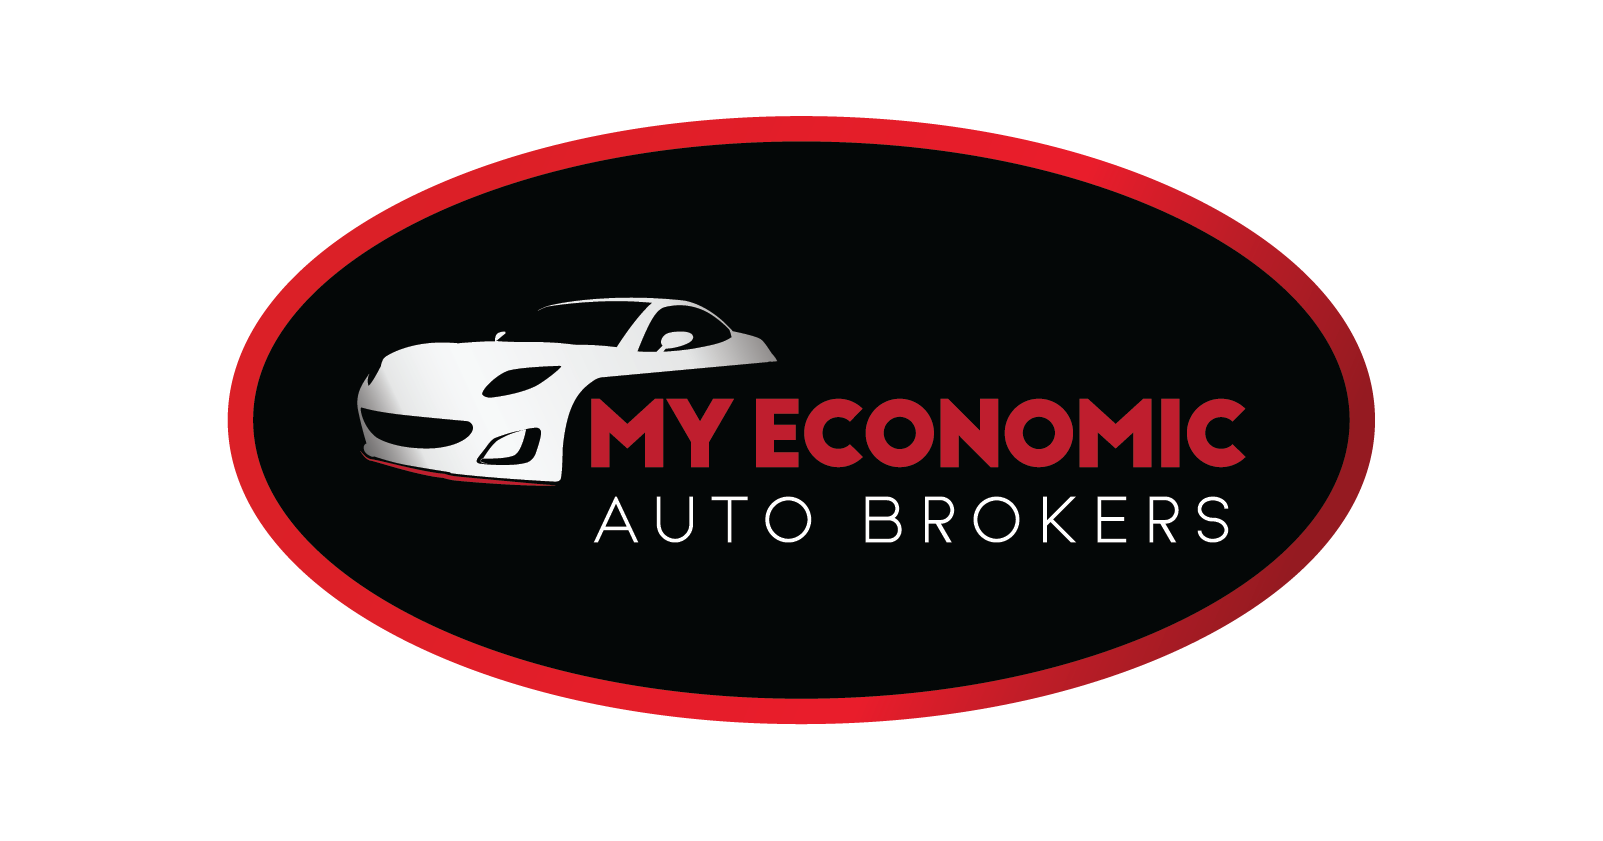 My Economic Auto Brokers